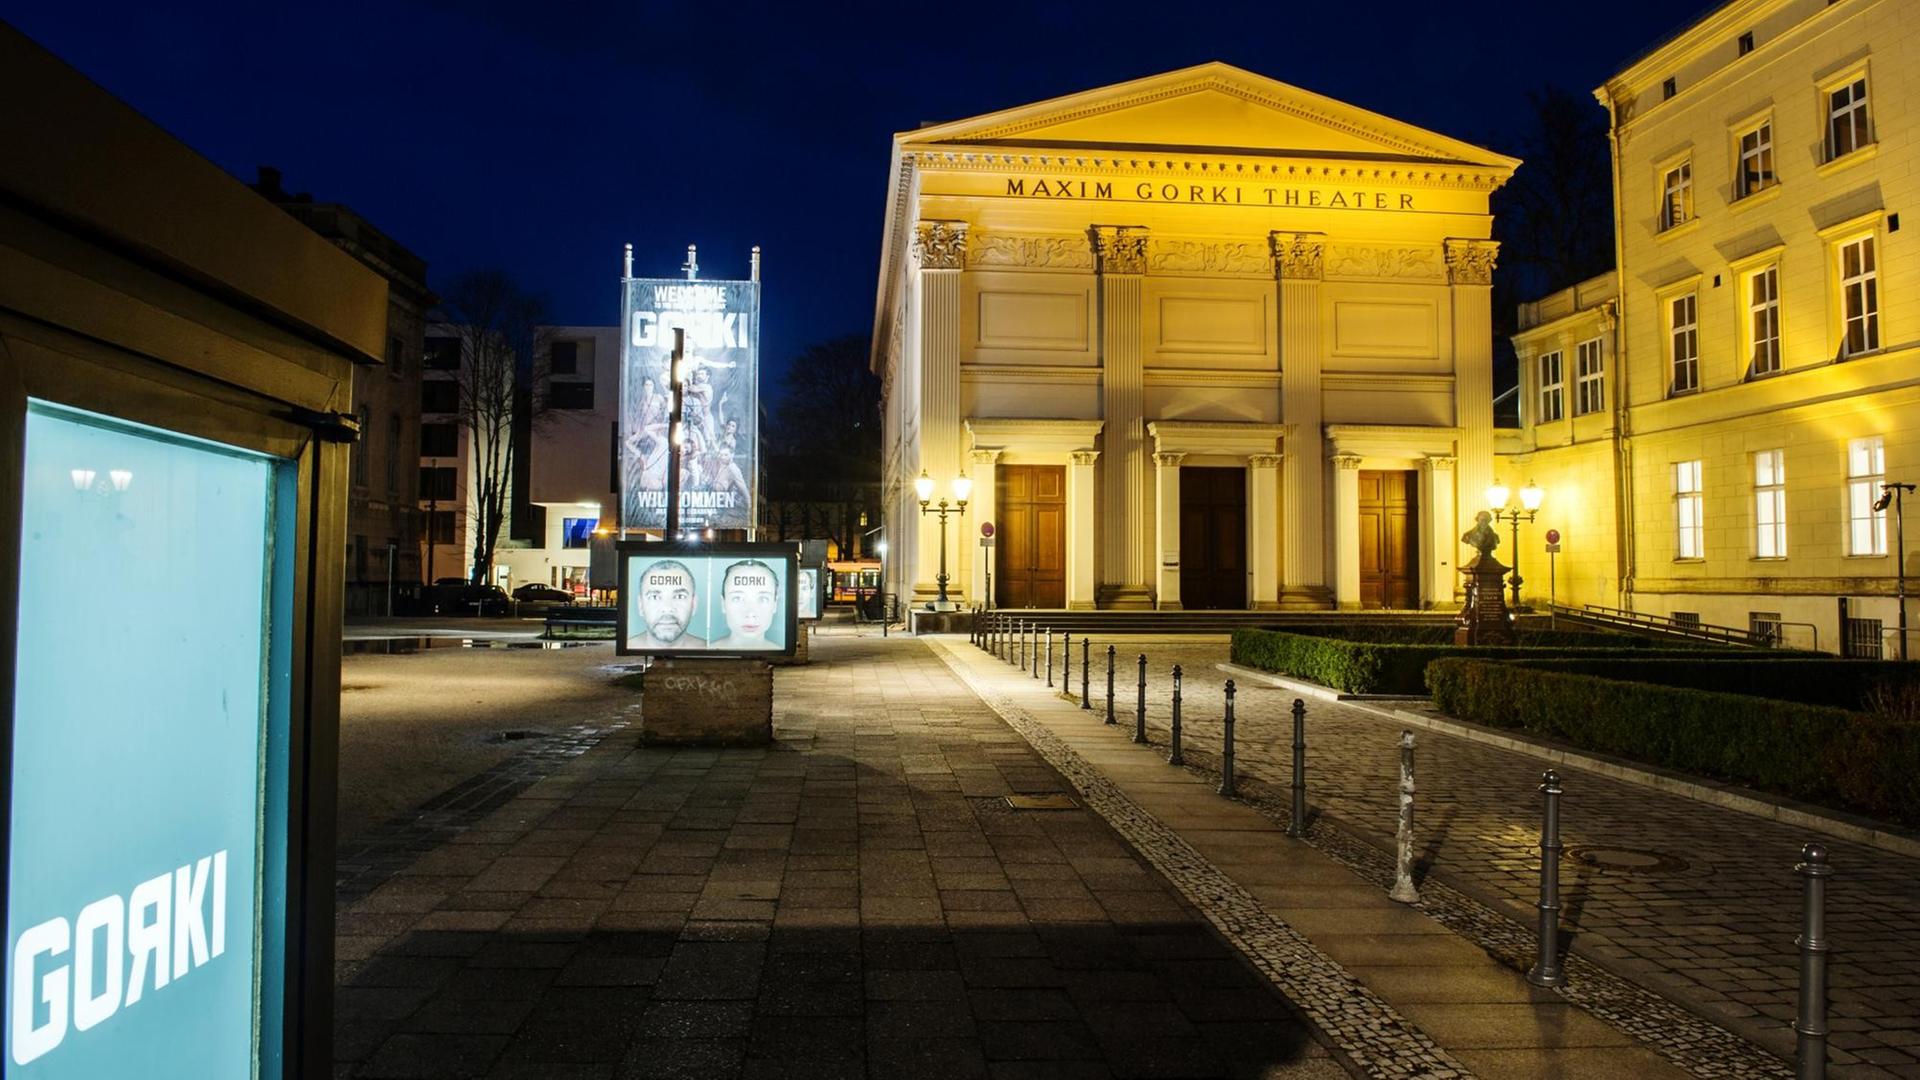 Das abendlich beleuchtete Maxim Gorki Theater in Berlin, aufgenommen am 17.01.2015.